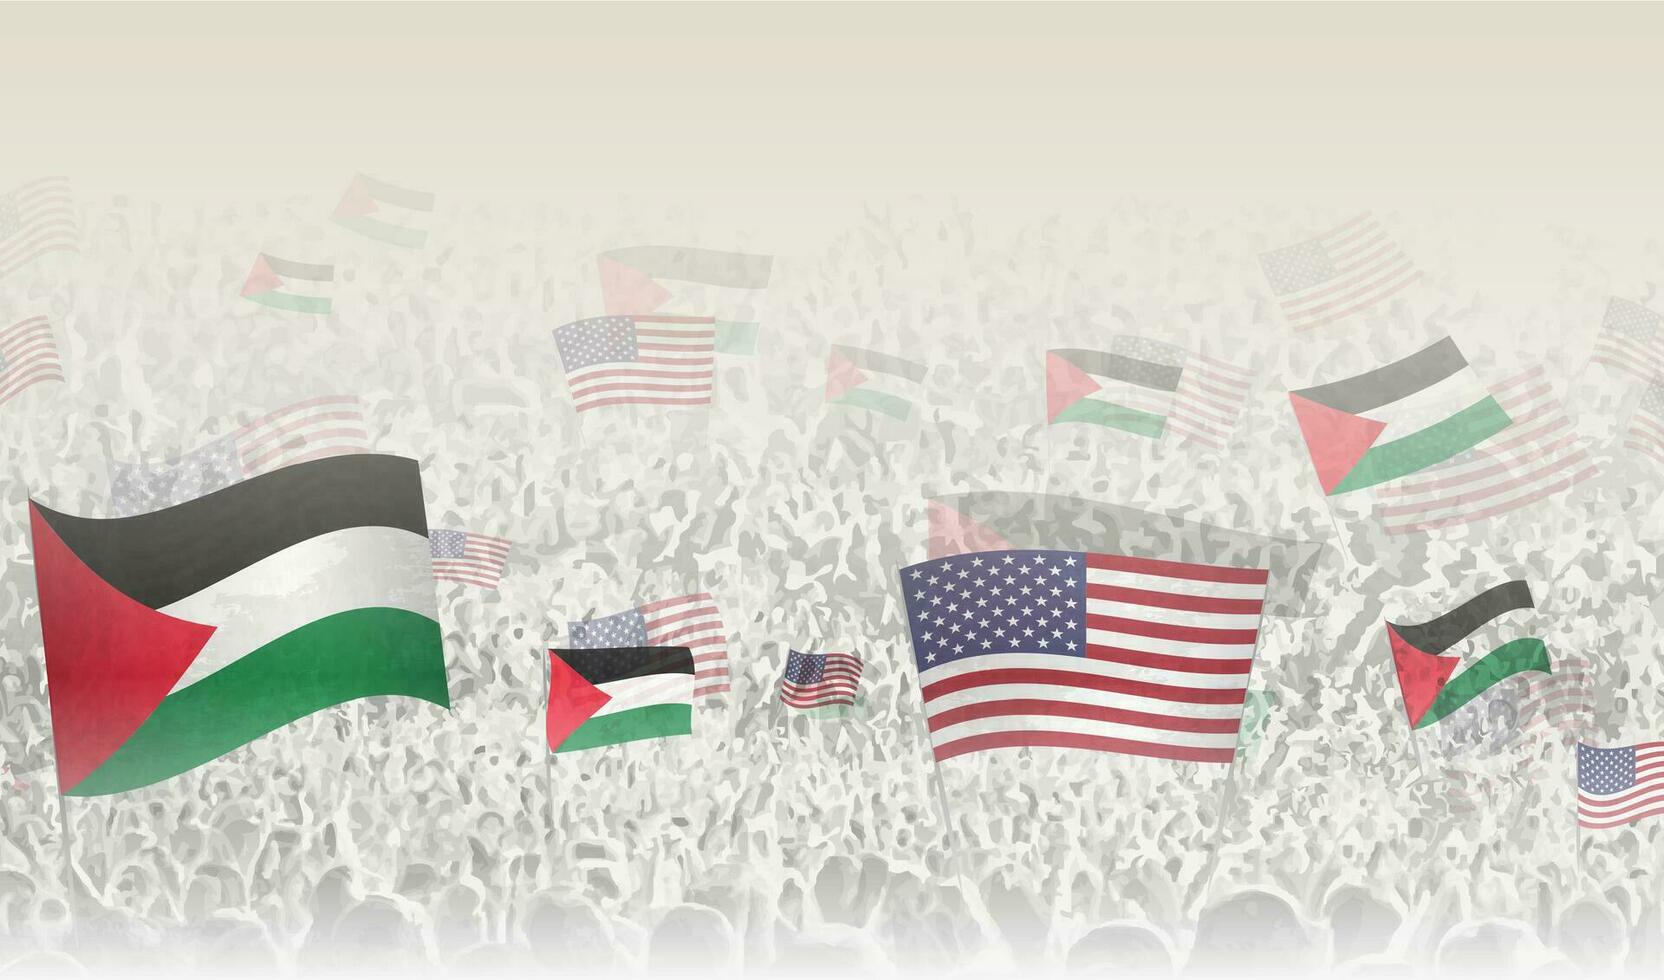 Palestina y Estados Unidos banderas en un multitud de aplausos gente. vector